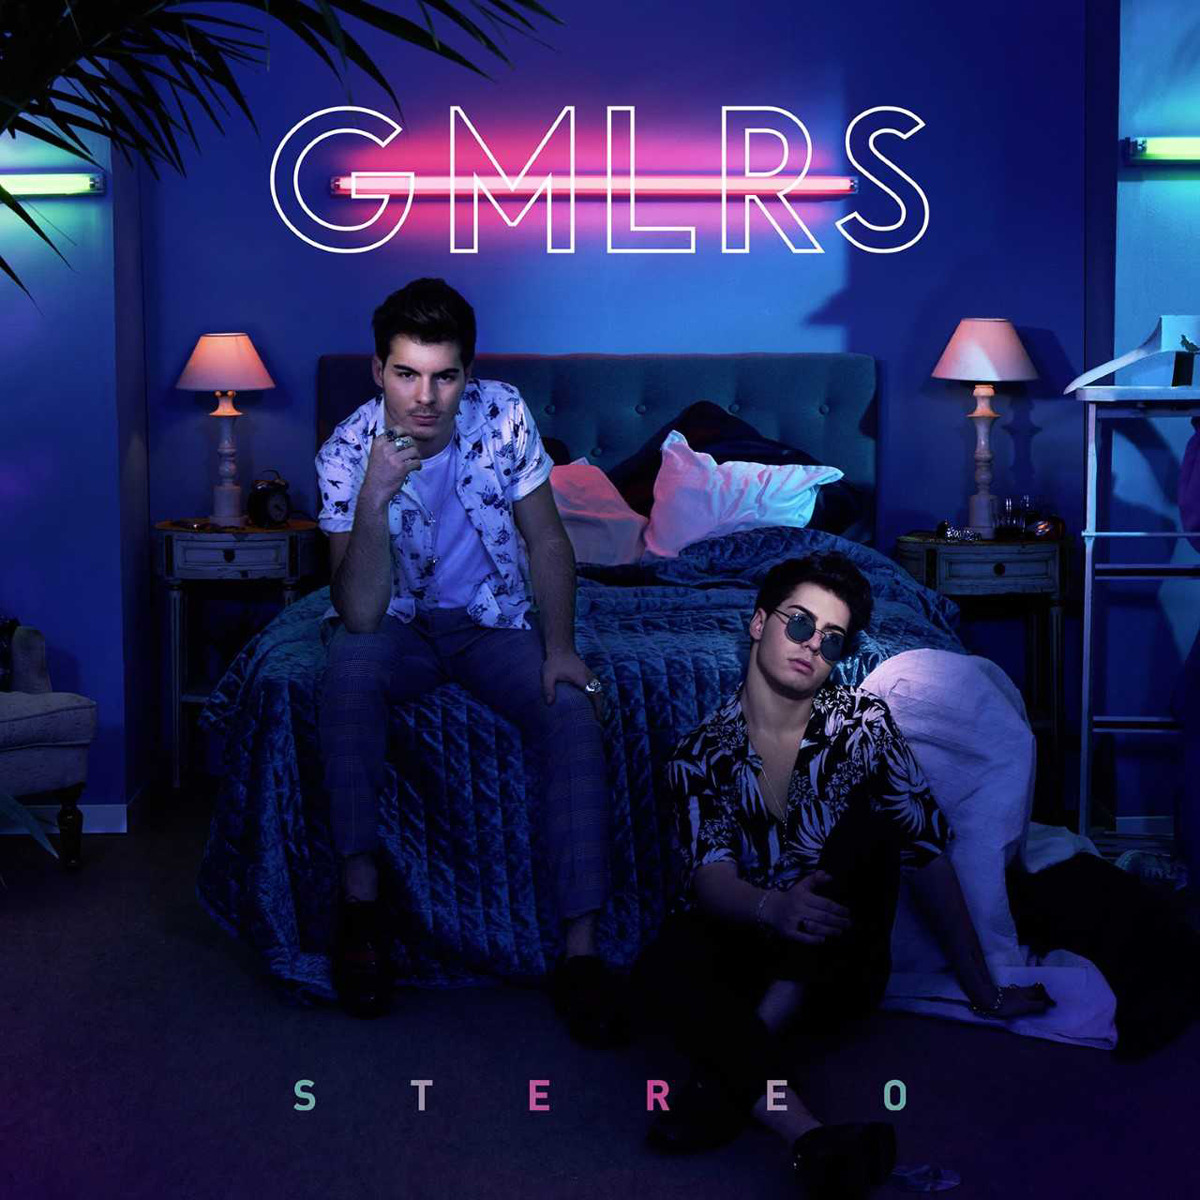 Gemeliers entran directos al número 1 de ventas con “Stereo”, su nuevo álbum